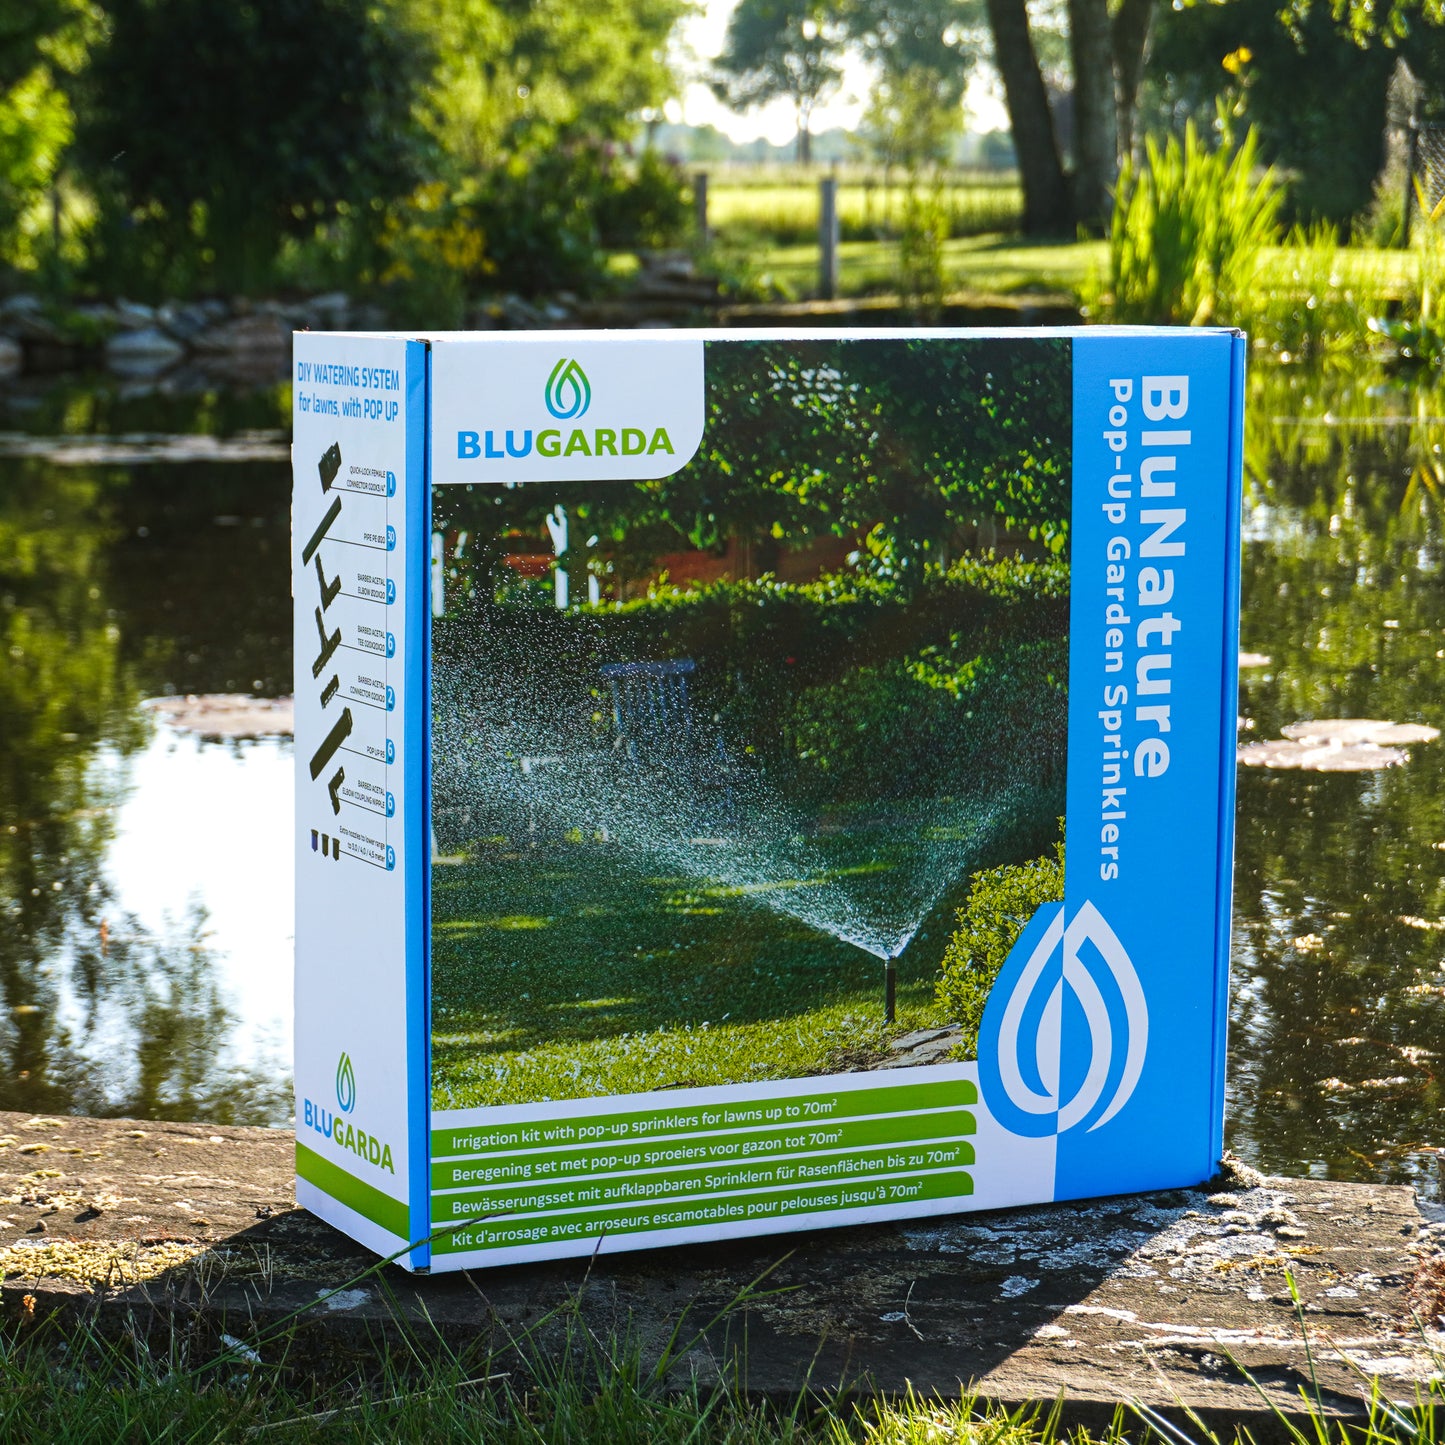 BluNature - Pop-Up Garten Sprinkler - Bewässerungsset mit Versenkregnern für Rasenflächen bis 70m2